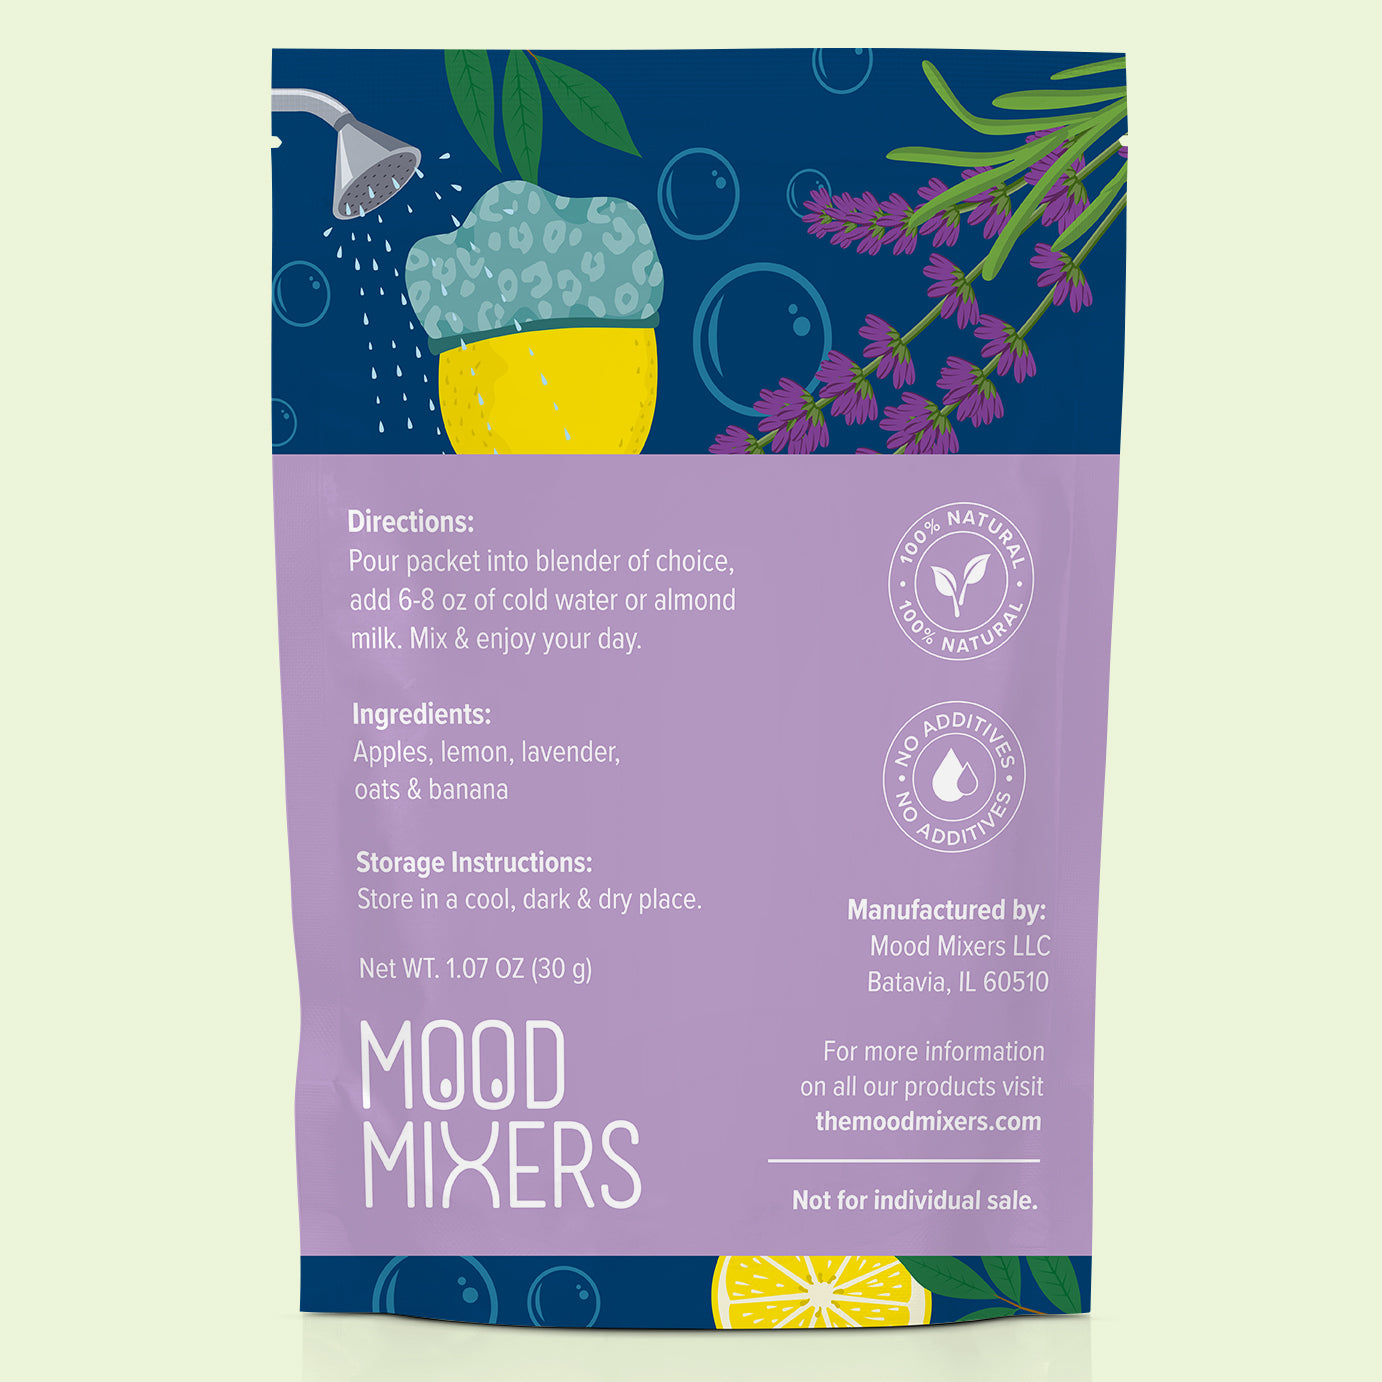 
                  
                    Feelin’ Mellow Lavender Lemonade: Pack of 3
                  
                